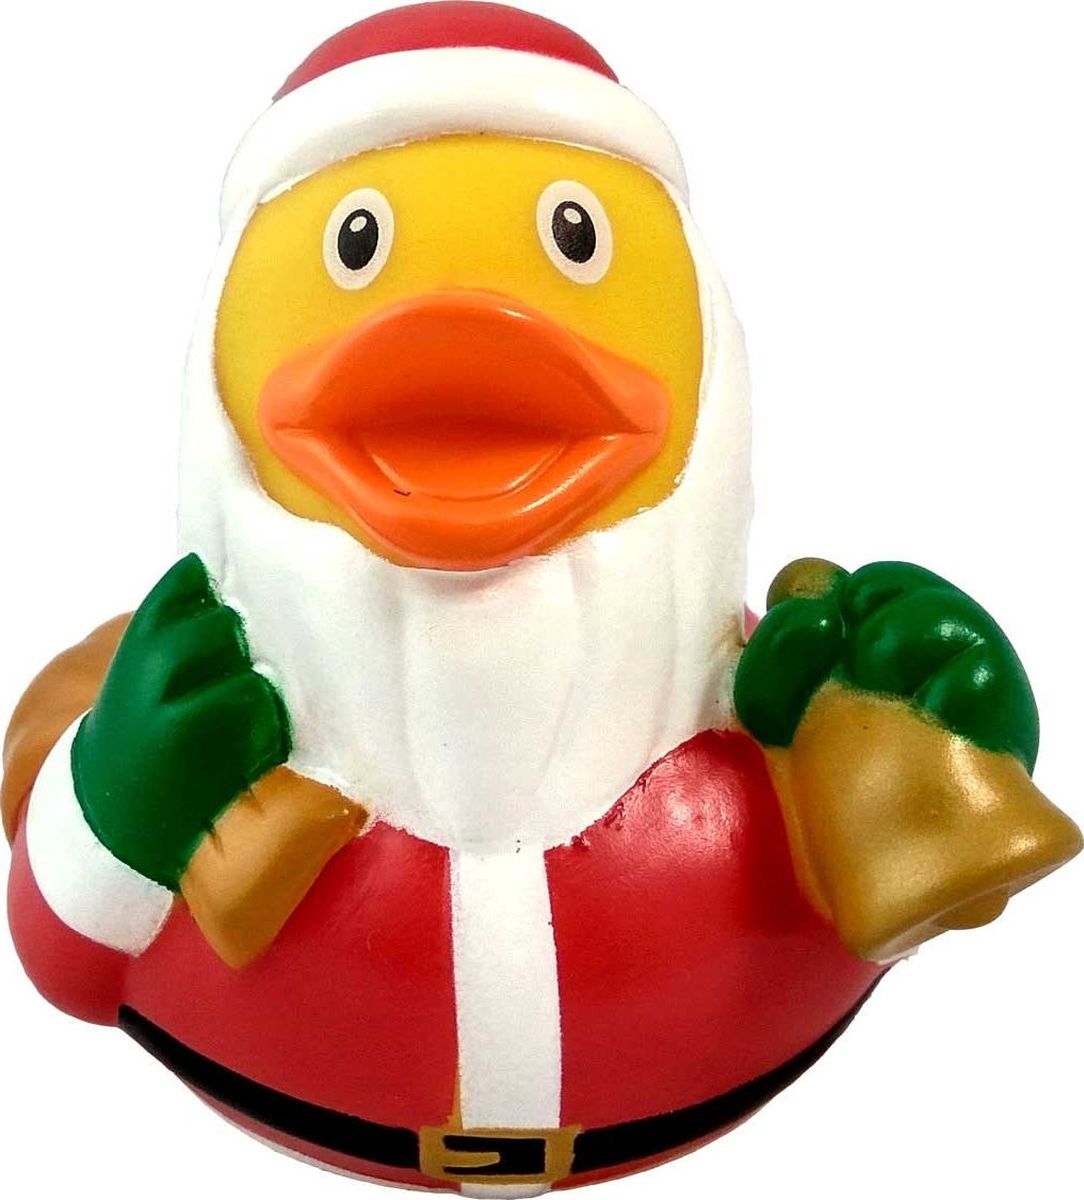 фото Игрушка для ванной FUNNY DUCKS " Дед Мороз", цвет : красный, желтый, зеленый.